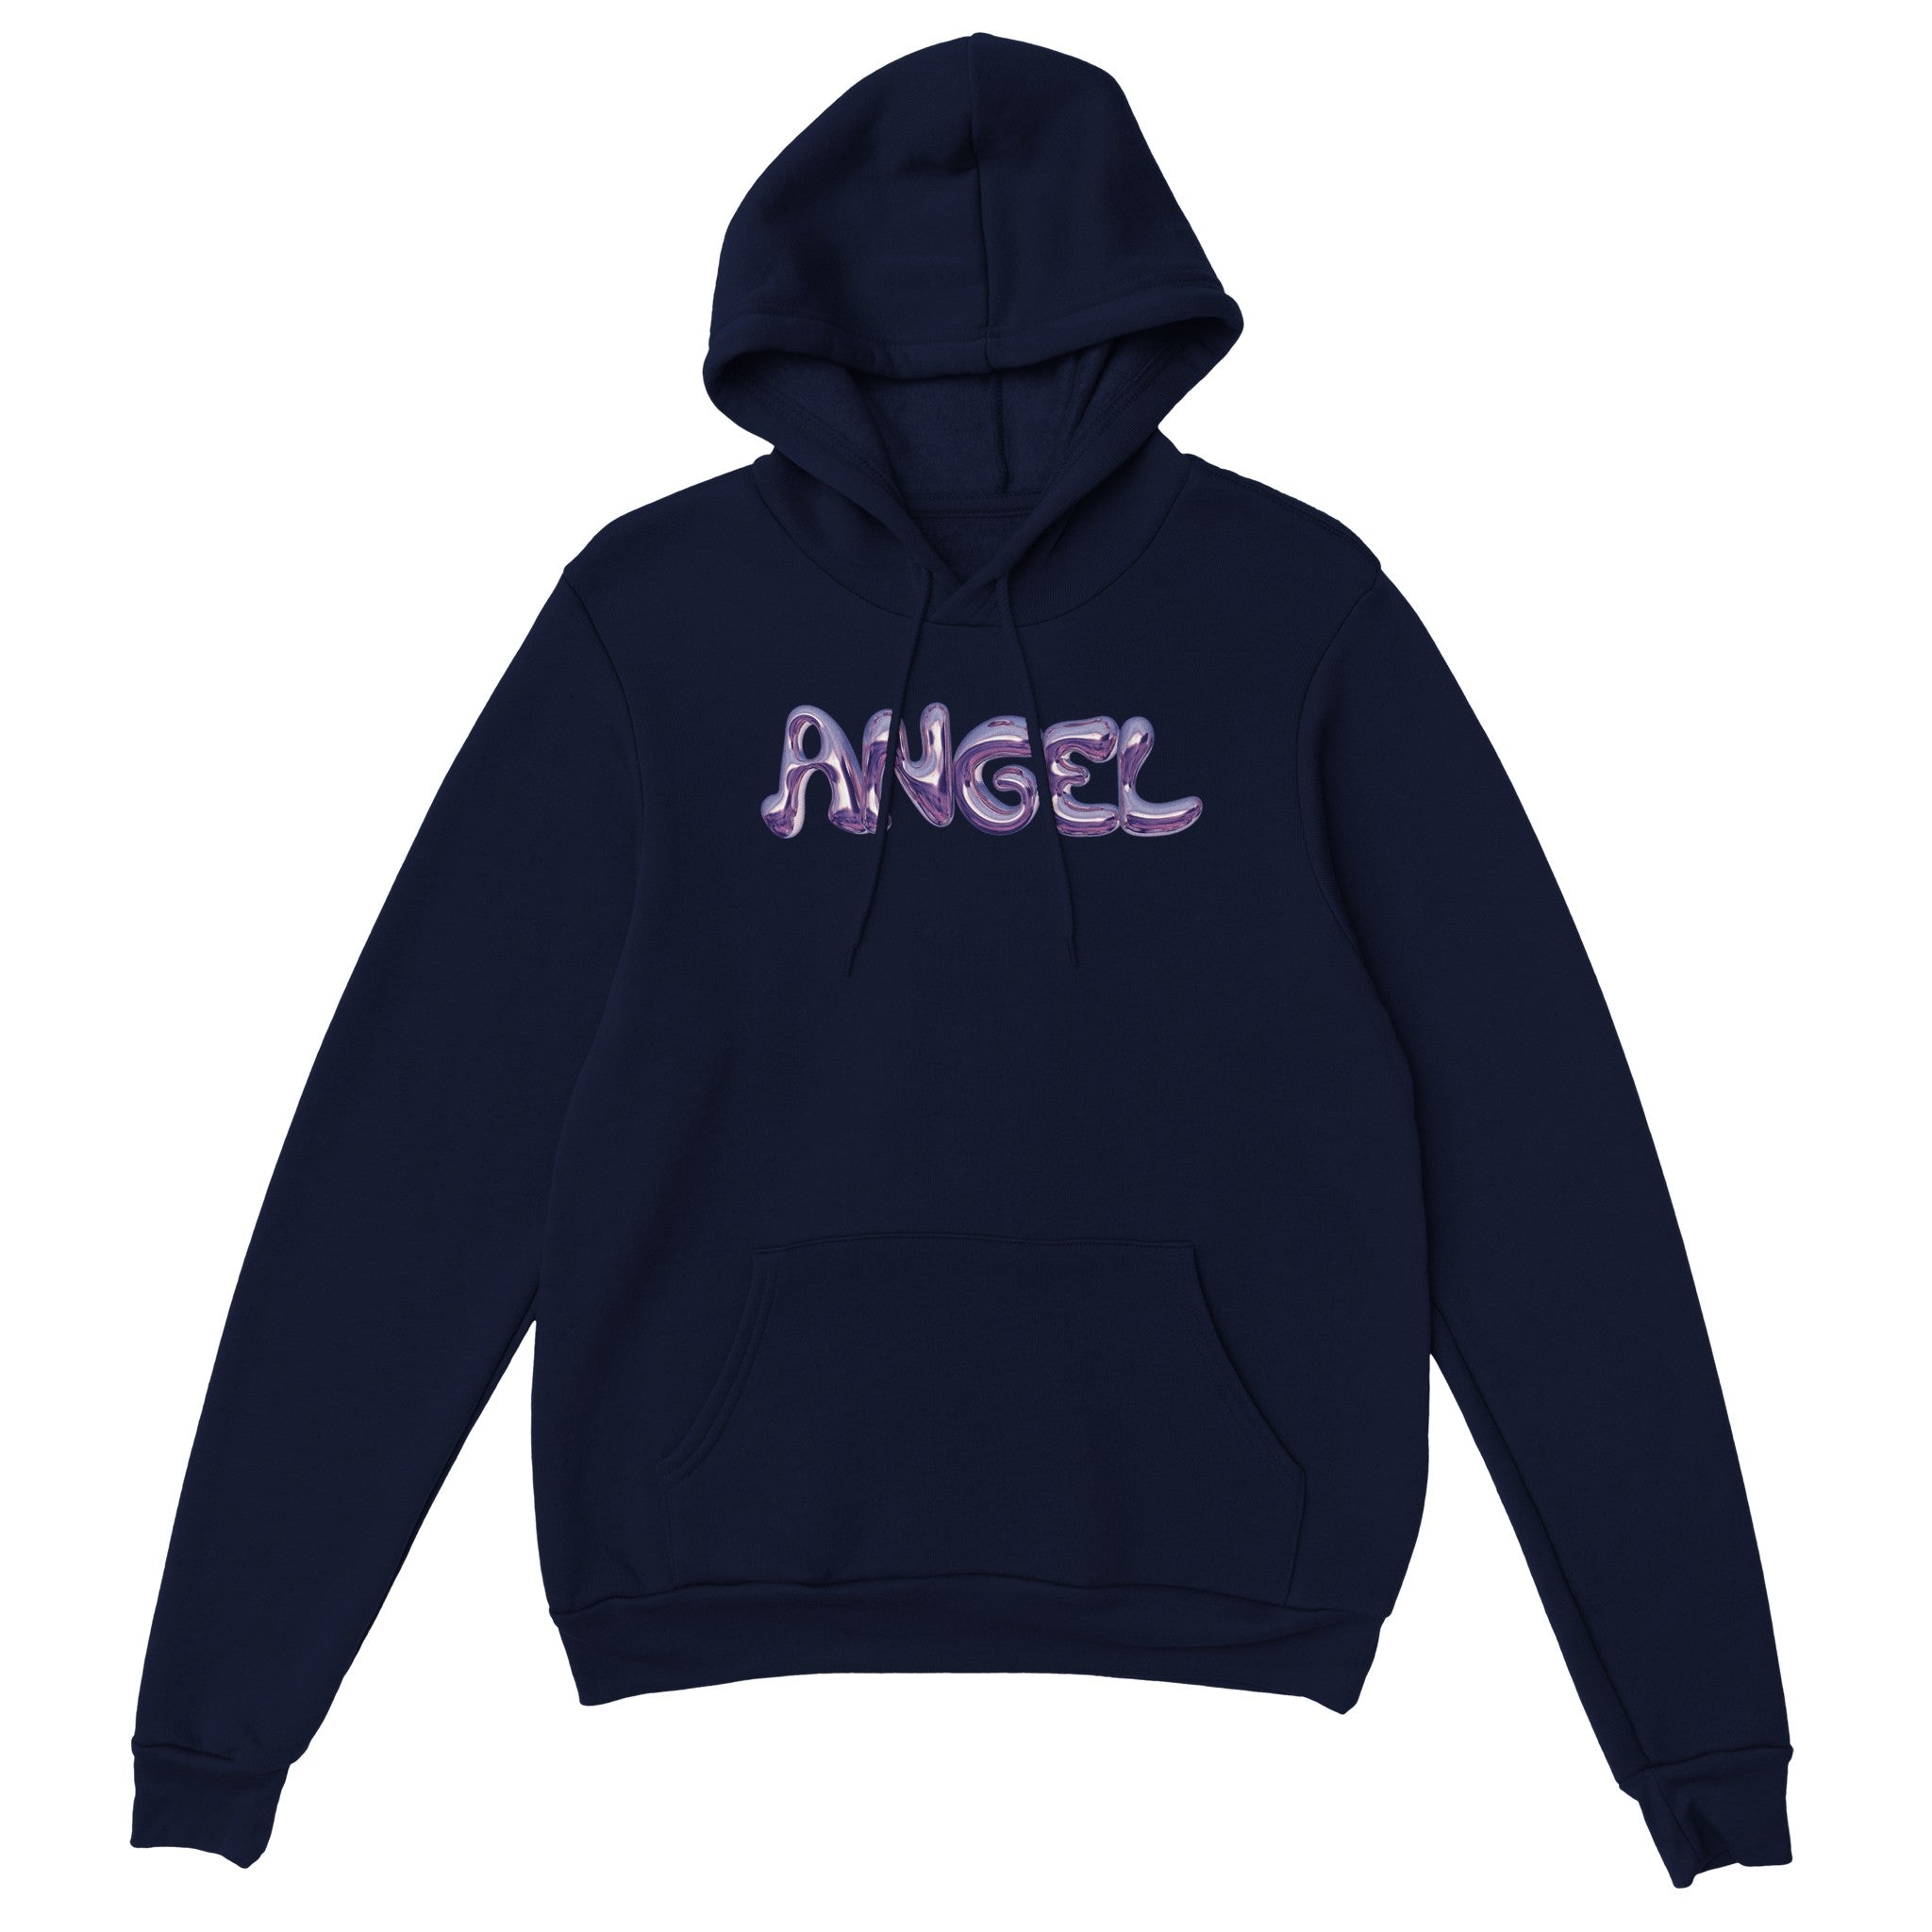 'Angel' hoodie - In Print We Trust